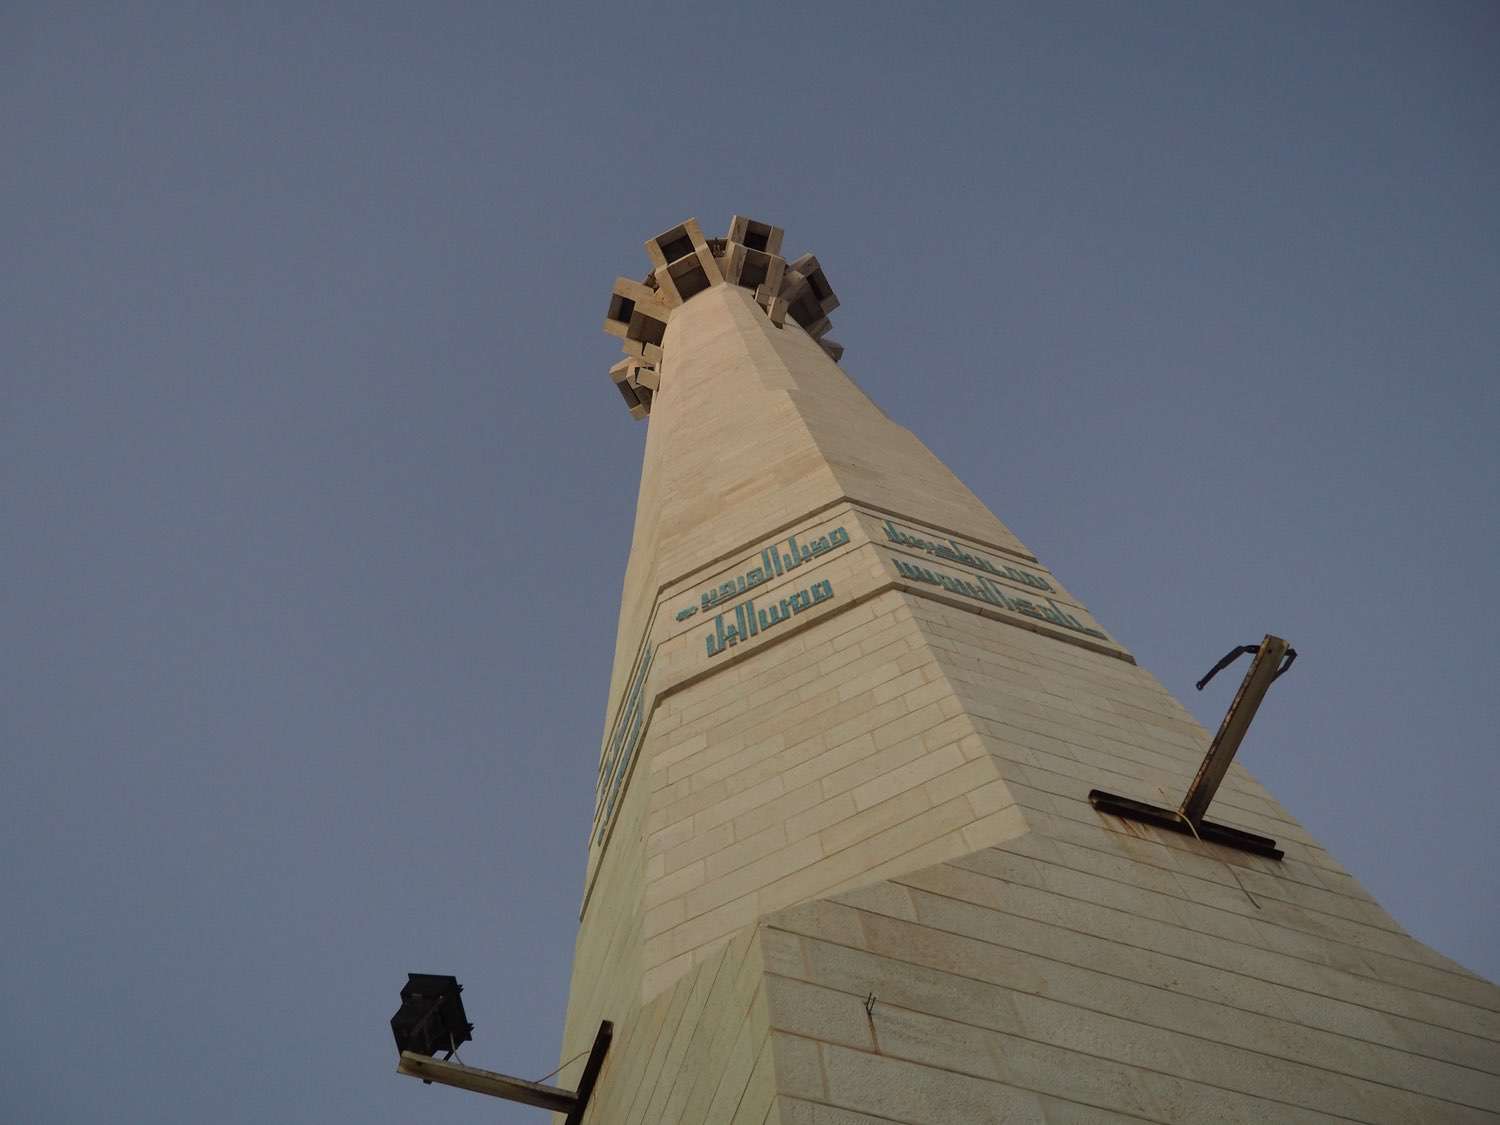 Upward view of a minaret